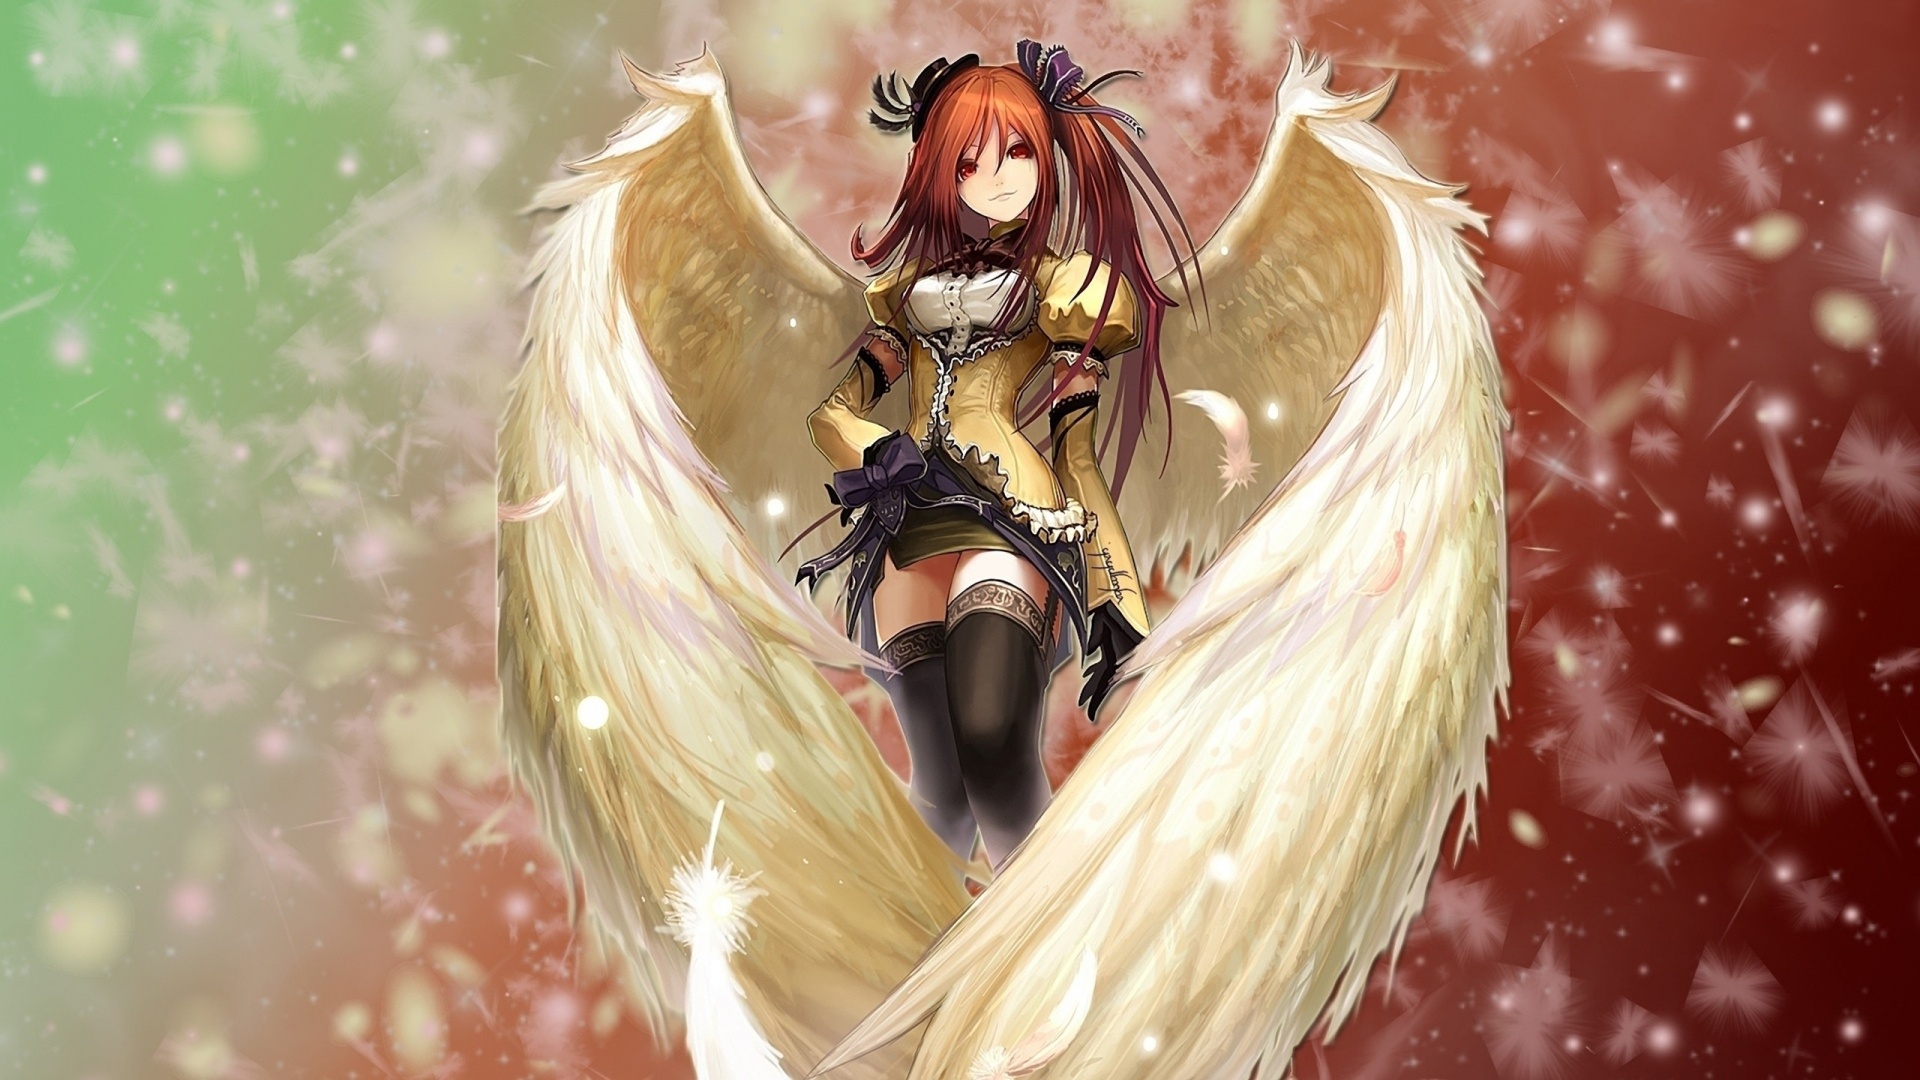 Hot Anime Angel Wallpaper